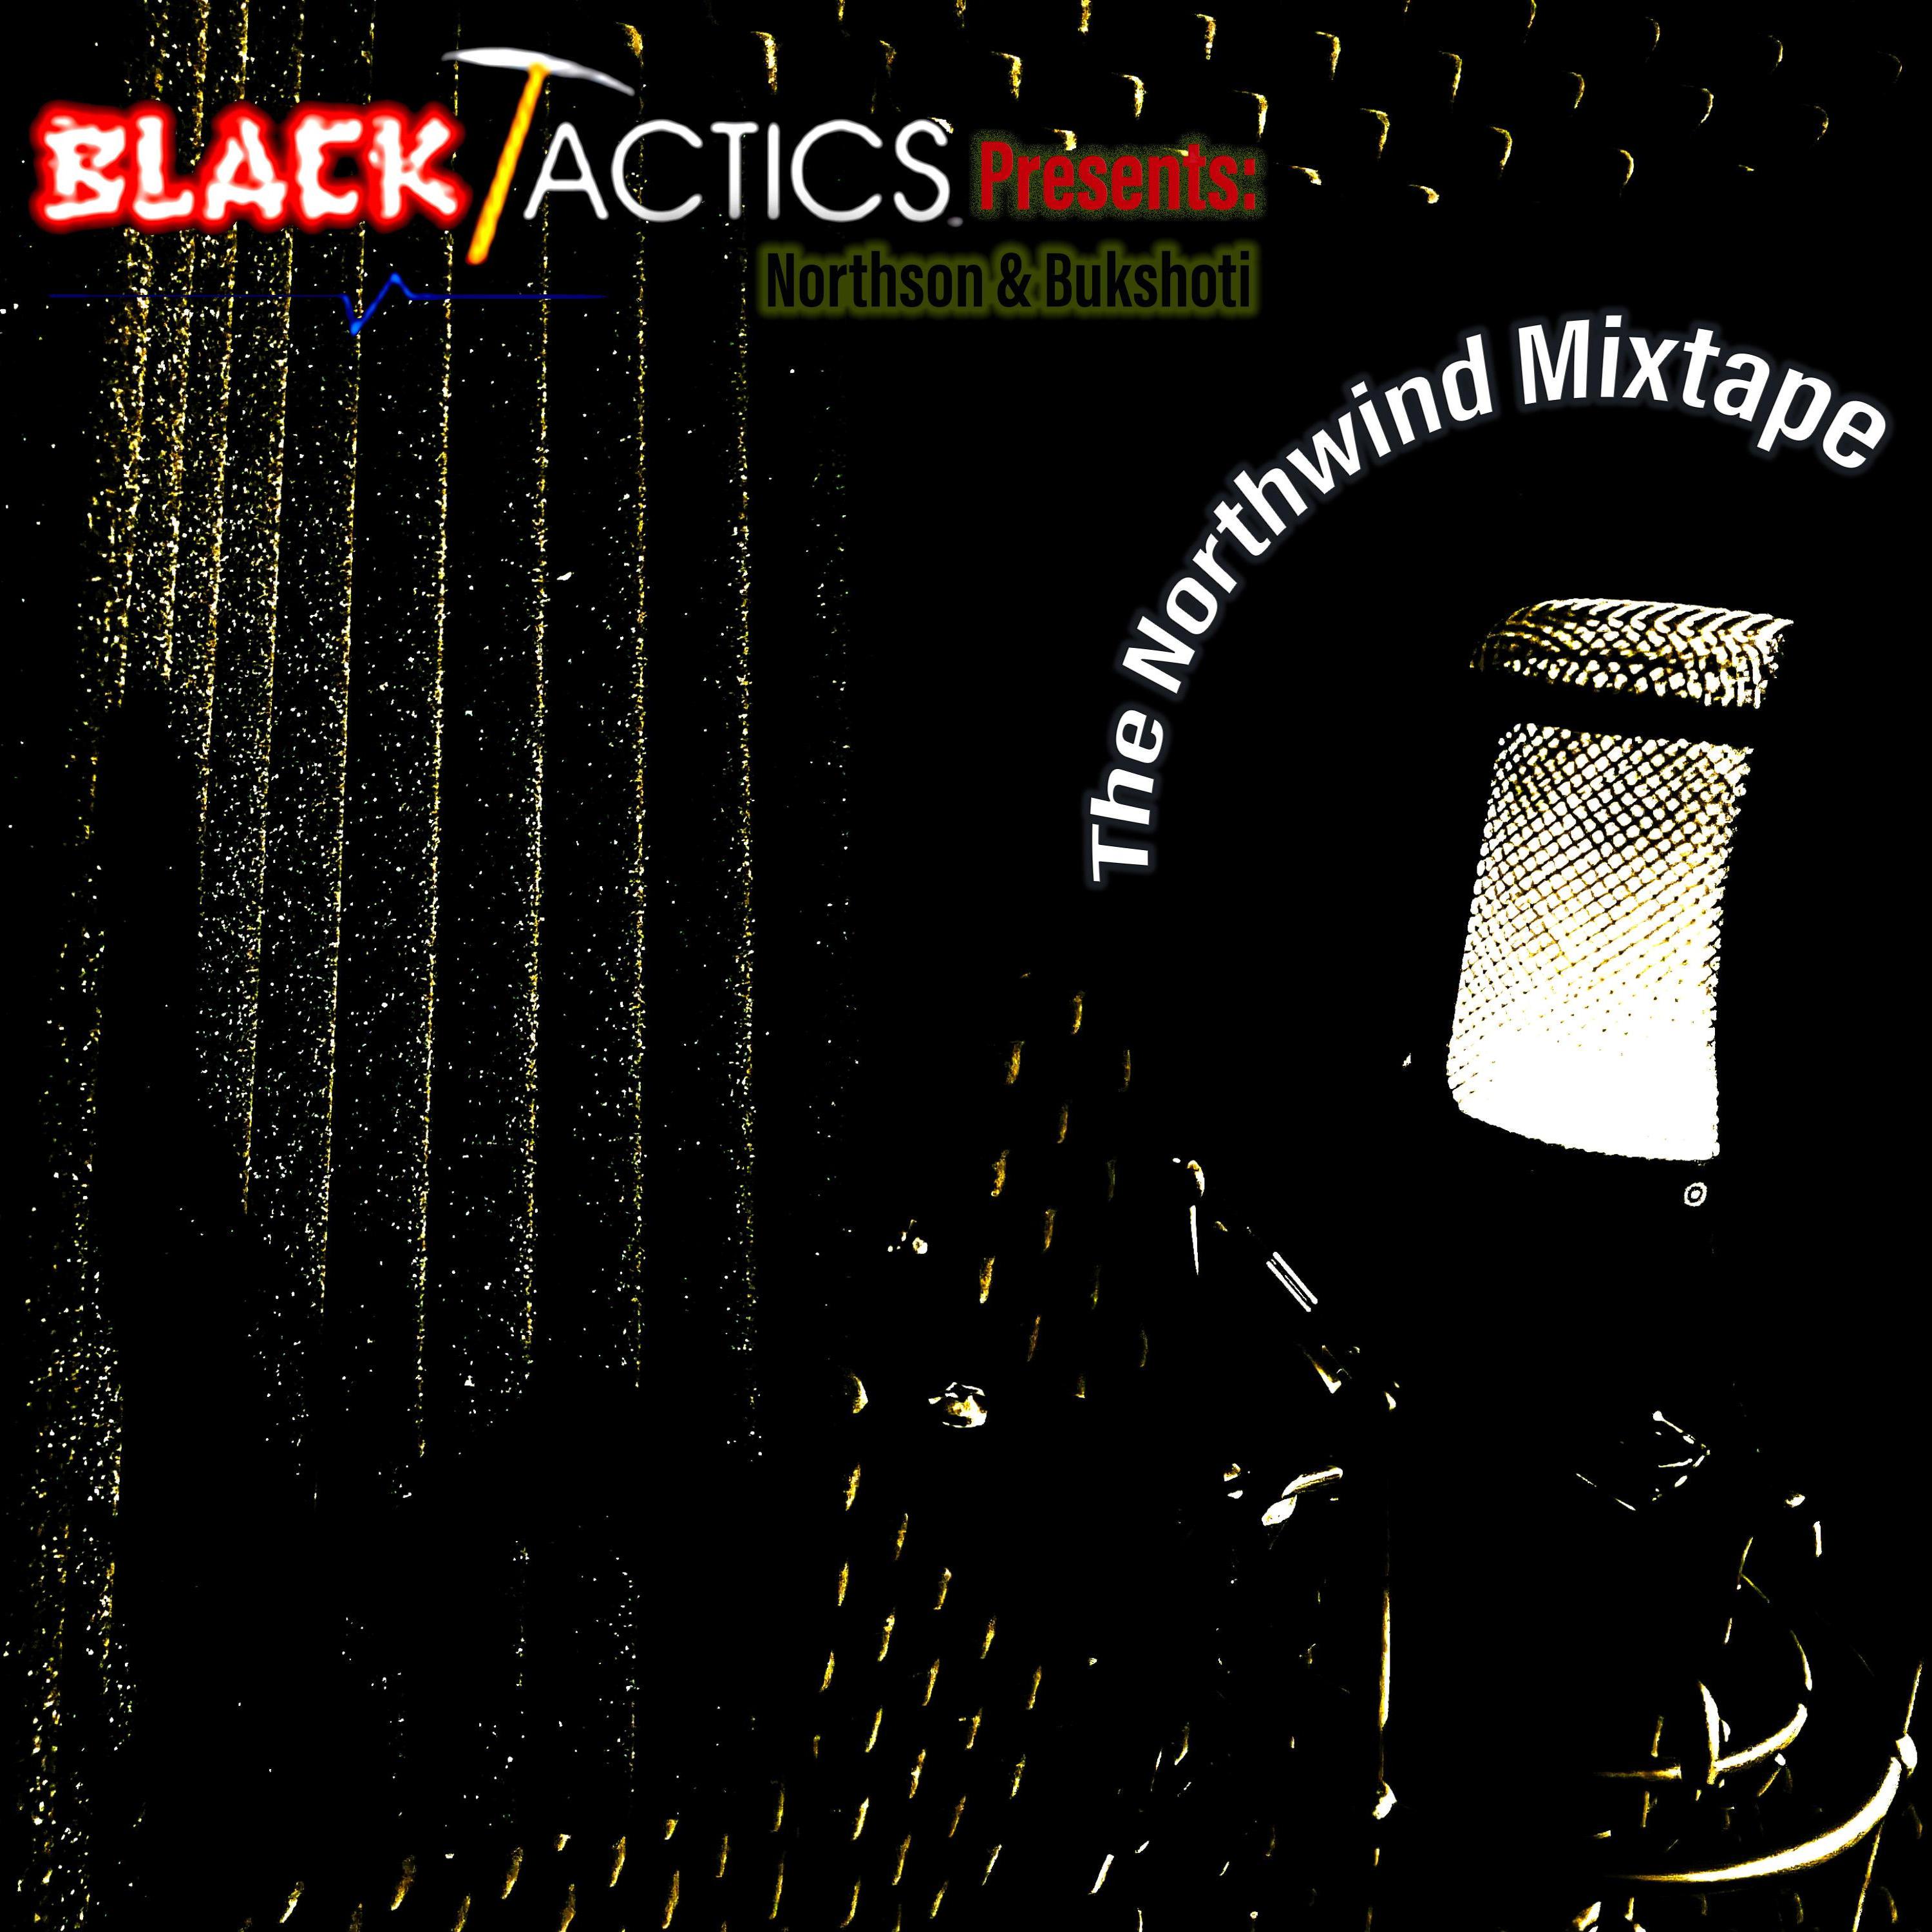 Black Tactics - I'ma